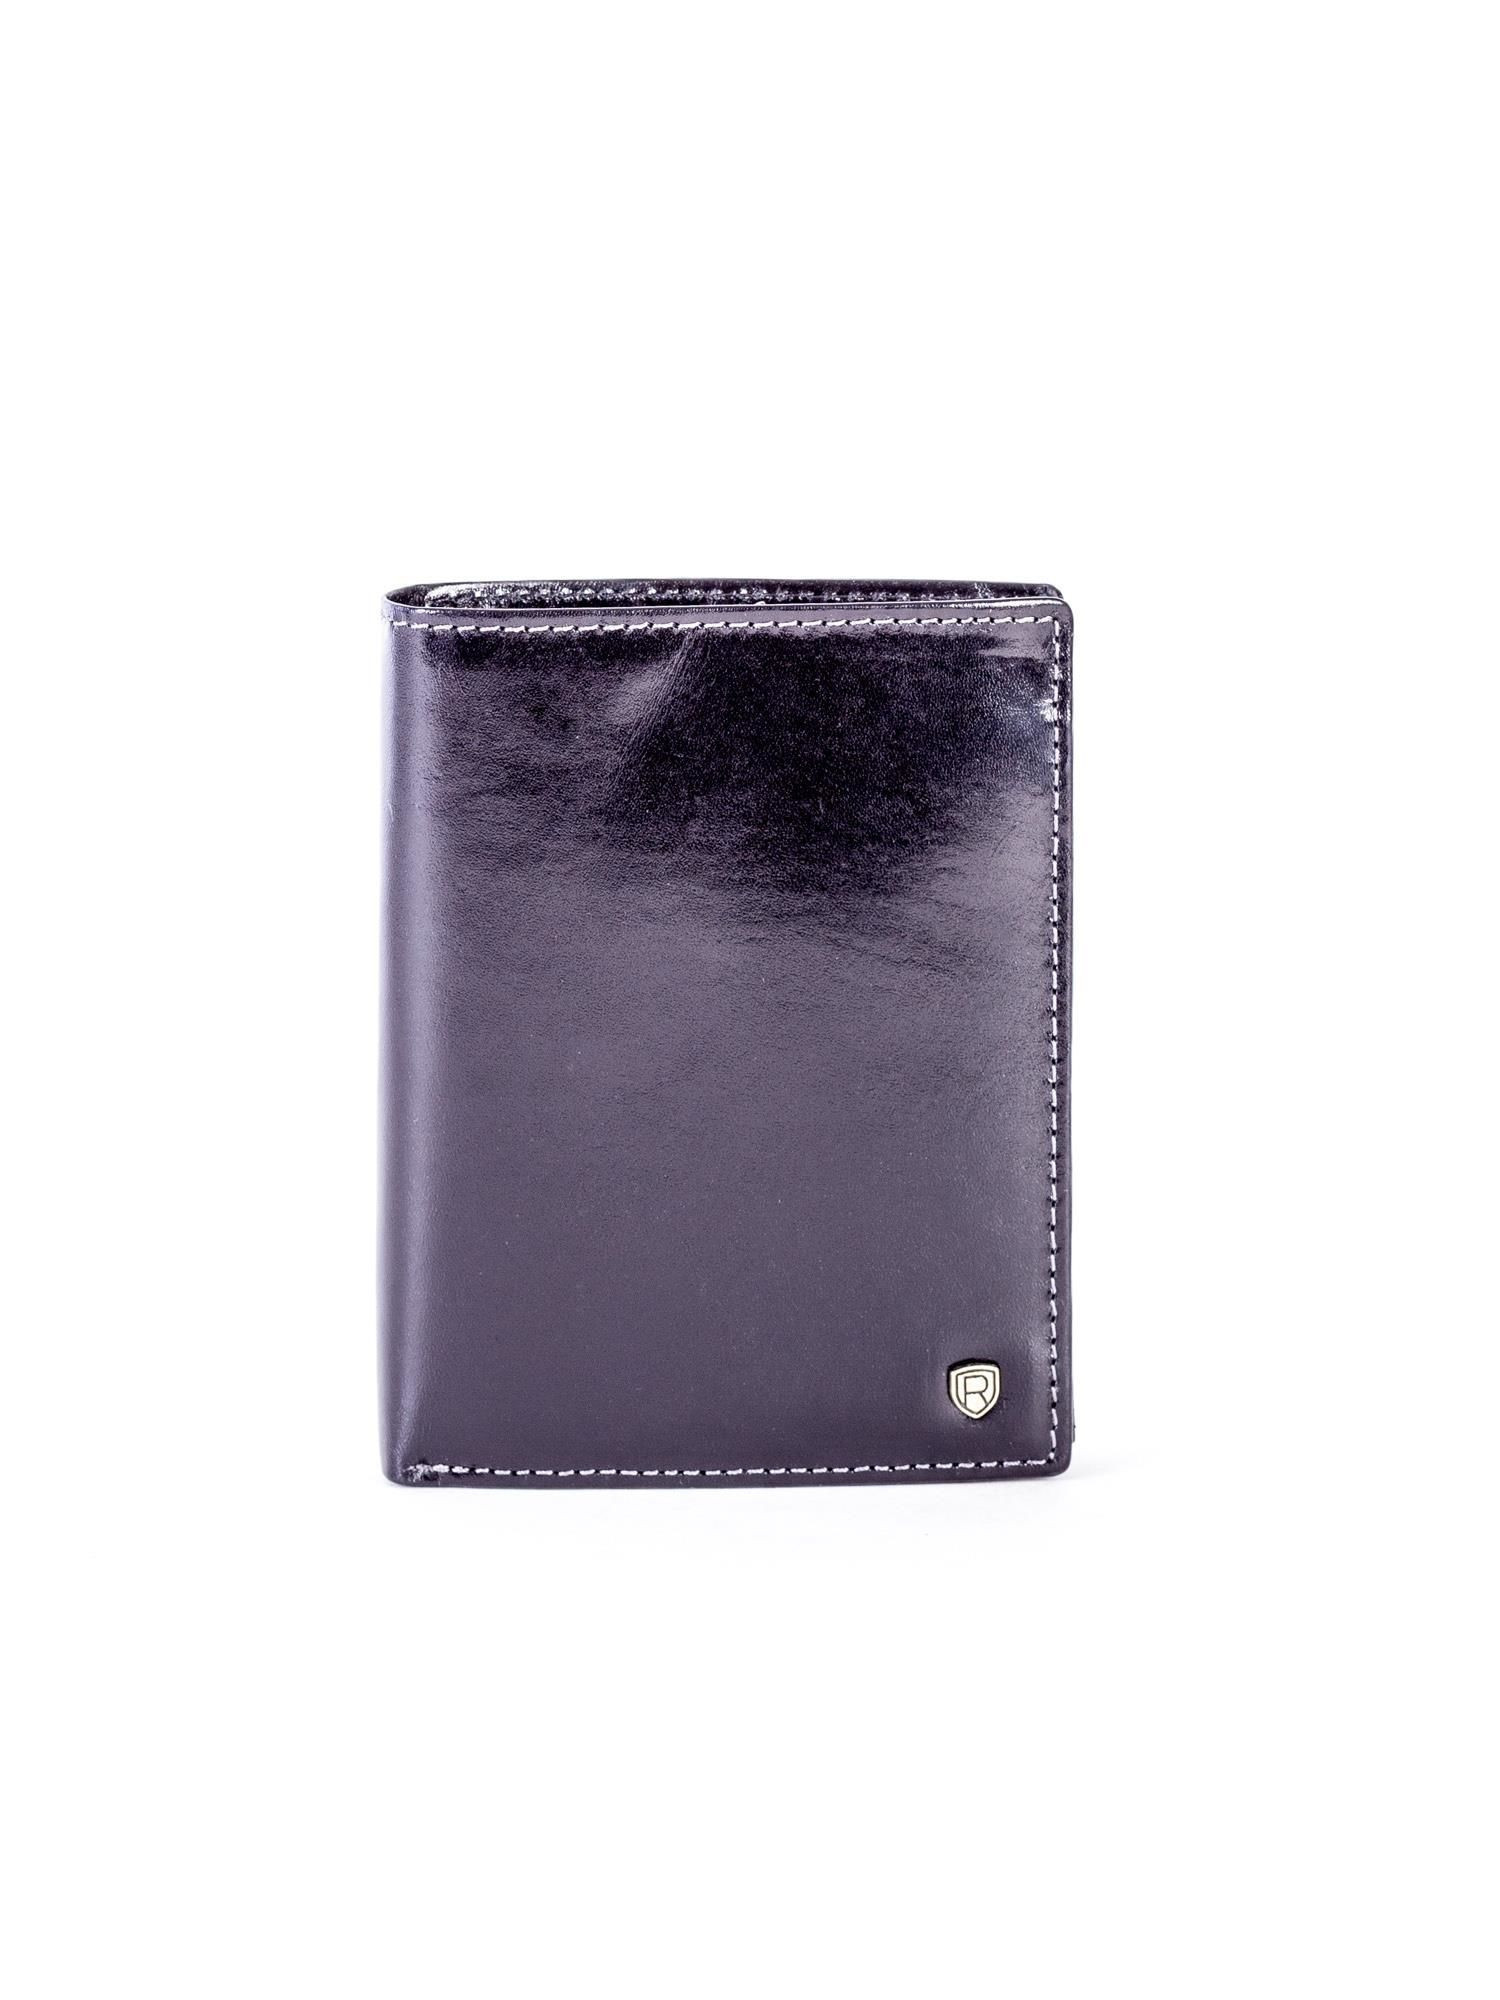 Pánská peněženka CE-PR-D1072-RVT.07 černá - ROVICKY černá one size